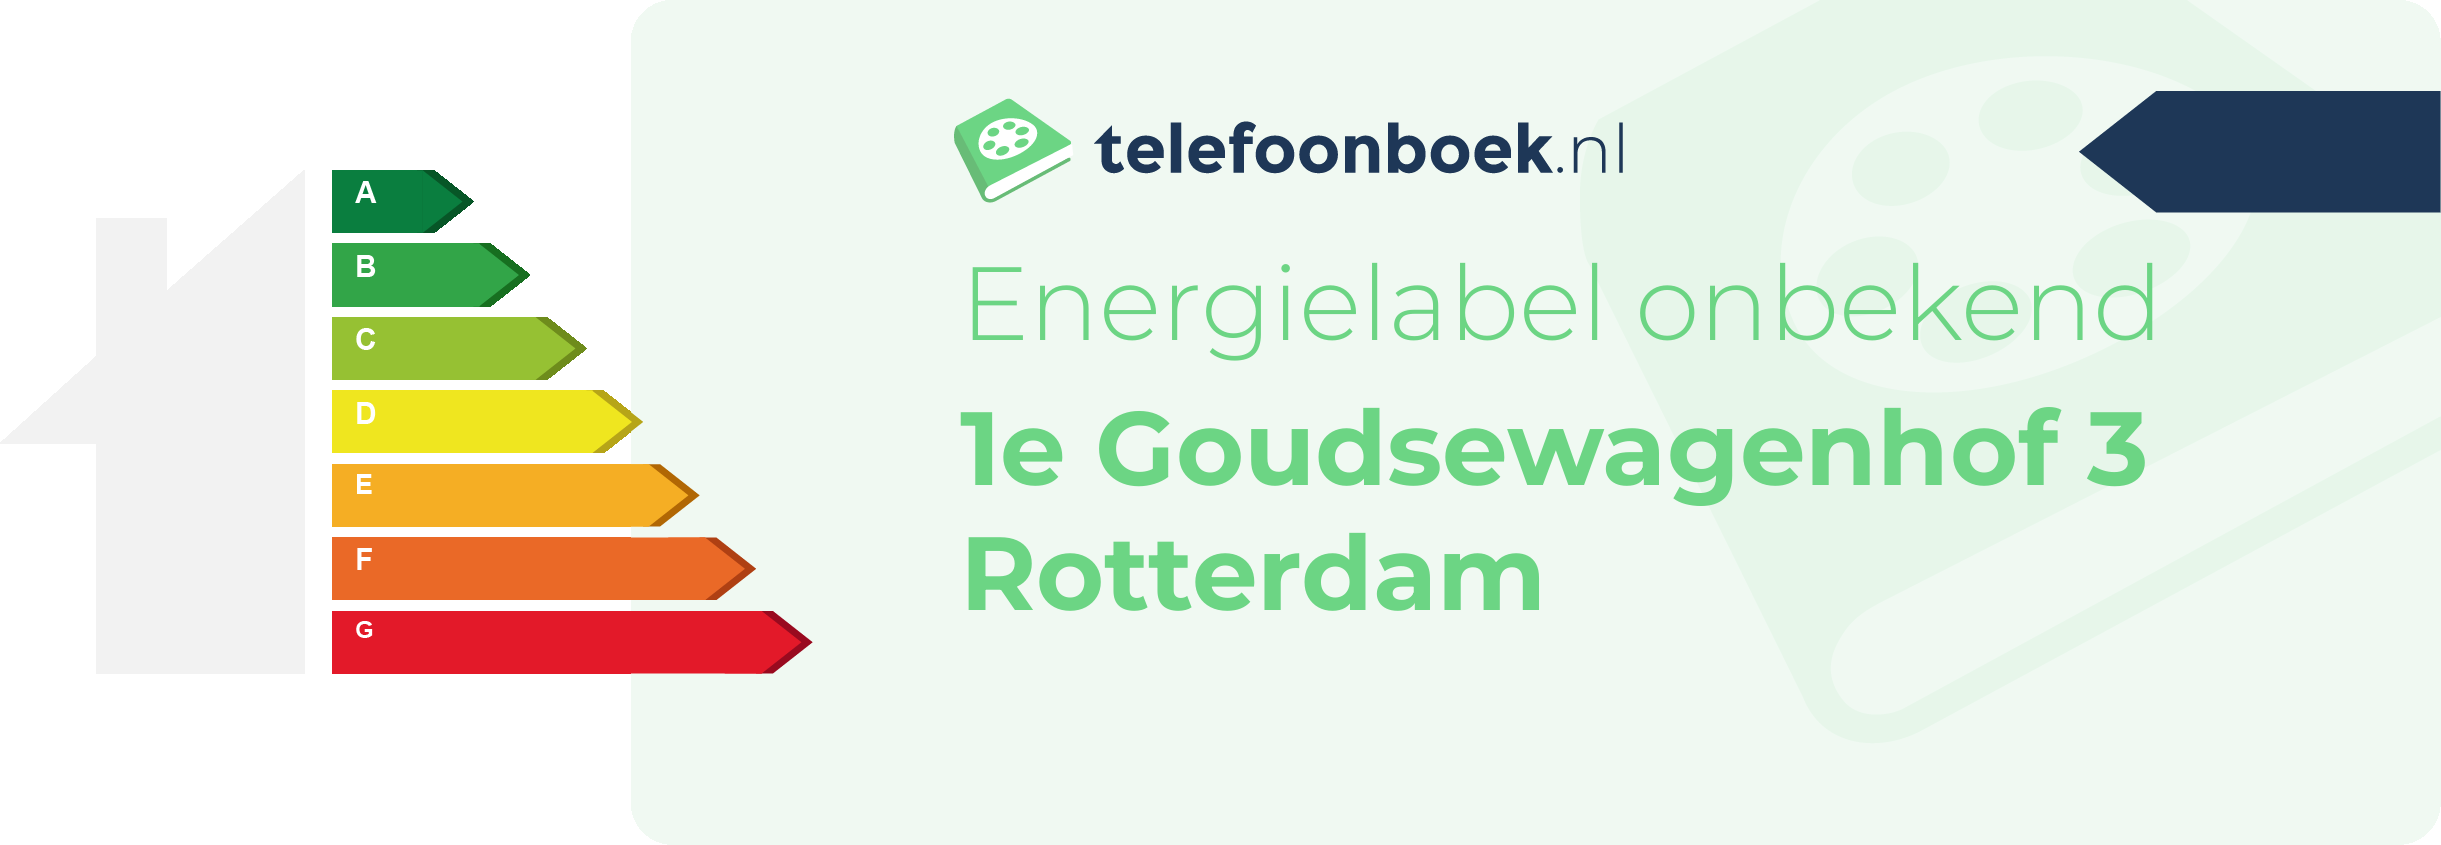 Energielabel 1e Goudsewagenhof 3 Rotterdam